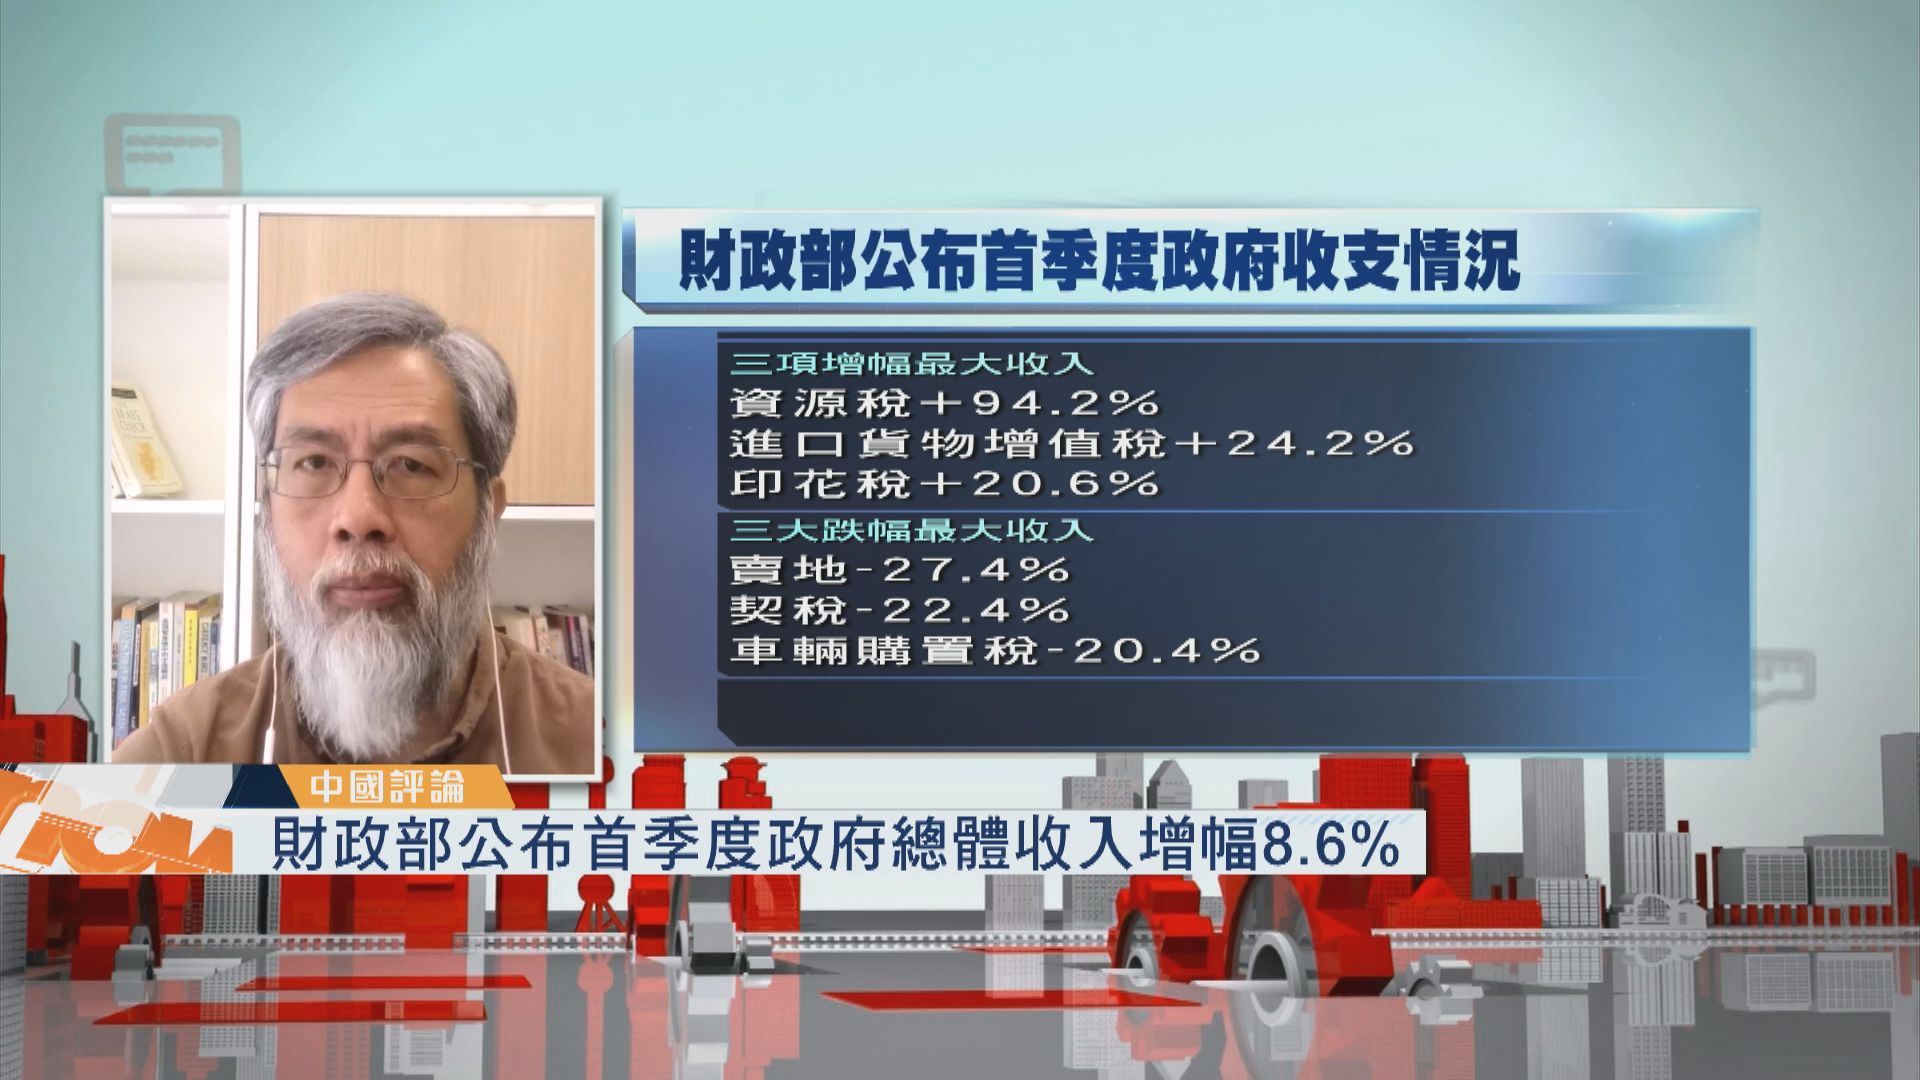 【中國評論】首季度政府總體收入增幅8.6%